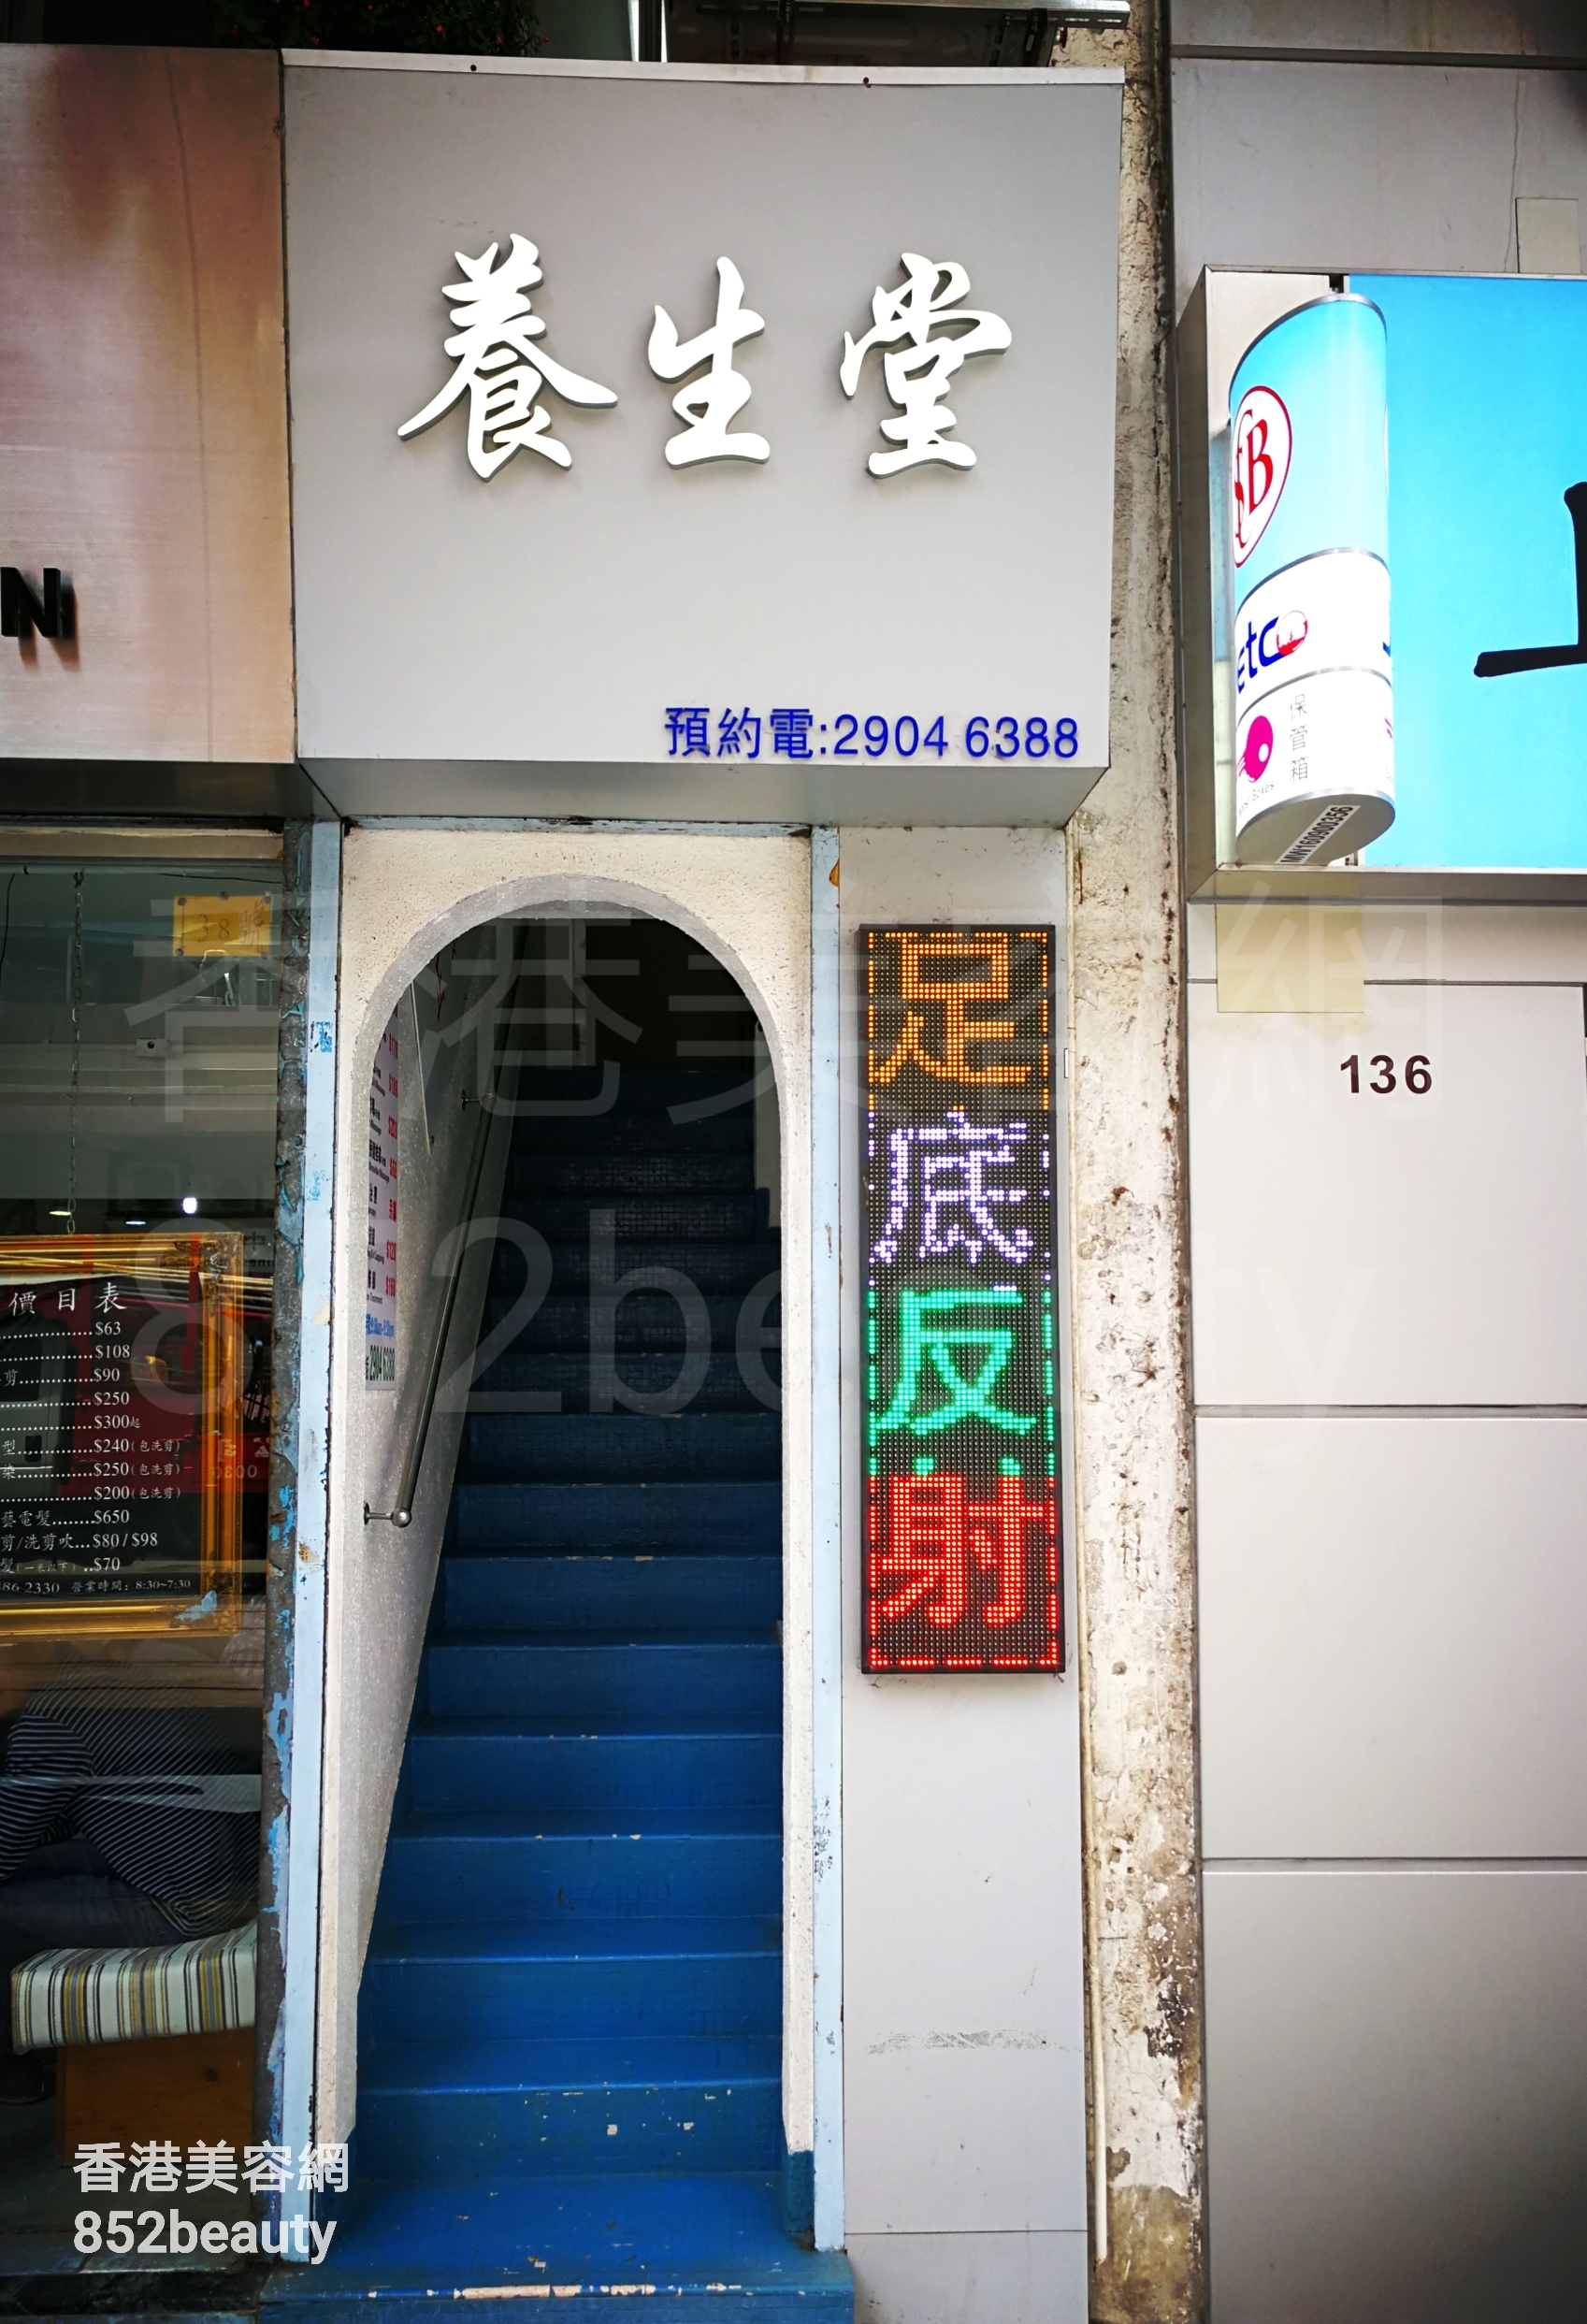 香港美容網 Hong Kong Beauty Salon 美容院 / 美容師: 養生堂